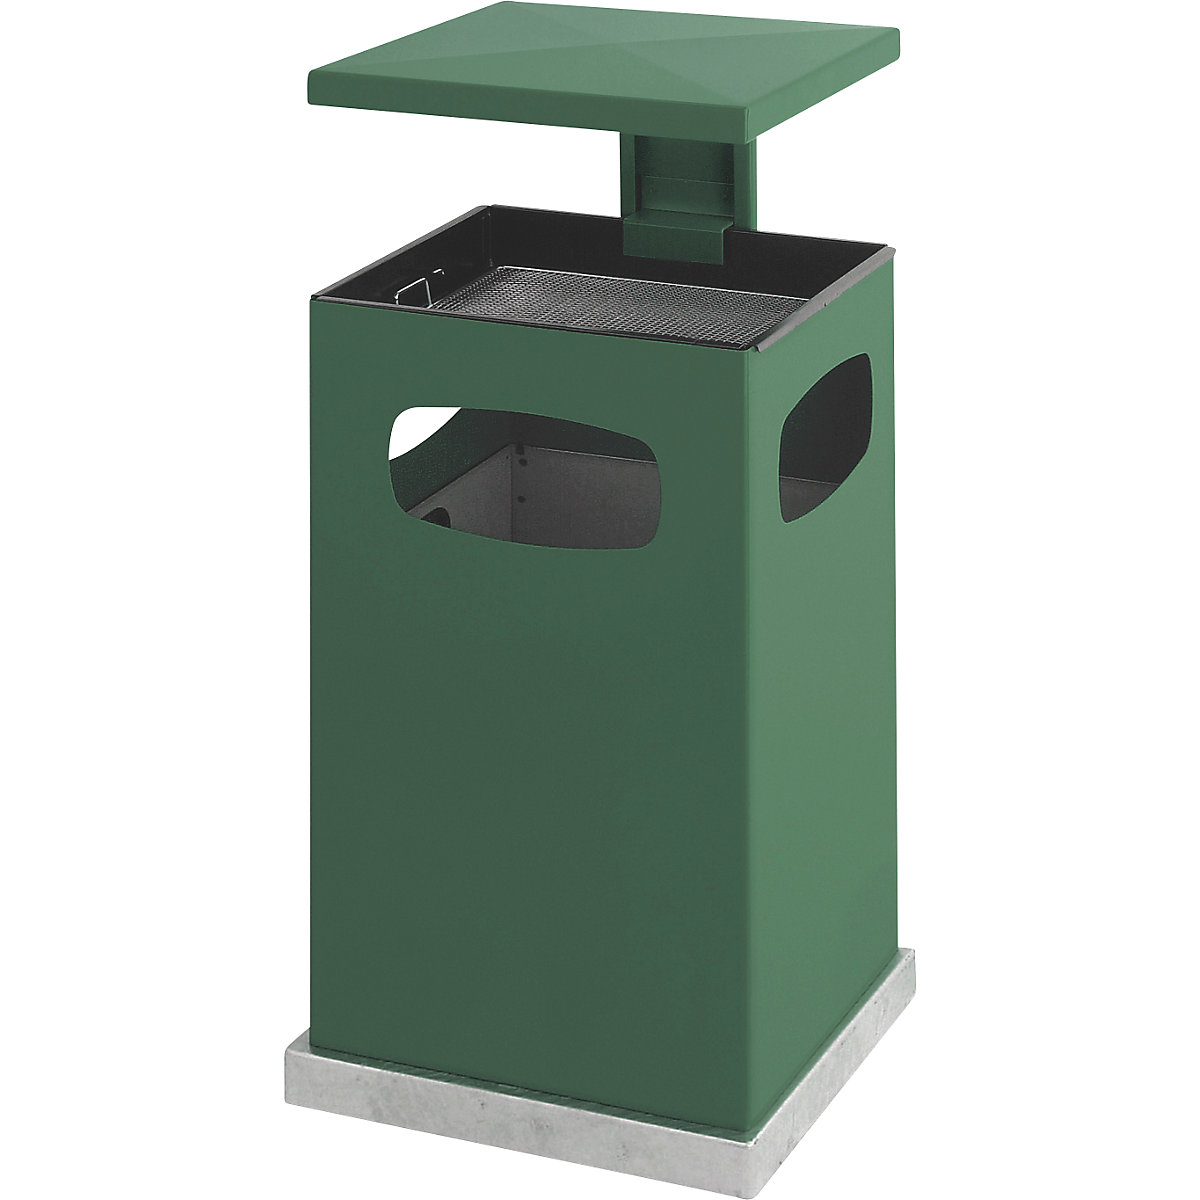 Coletor de lixo com aplique de cinzeiro e telhado de proteção, capacidade 72 l, LxAxP 500 x 955 x 500 mm, verde musgo-6